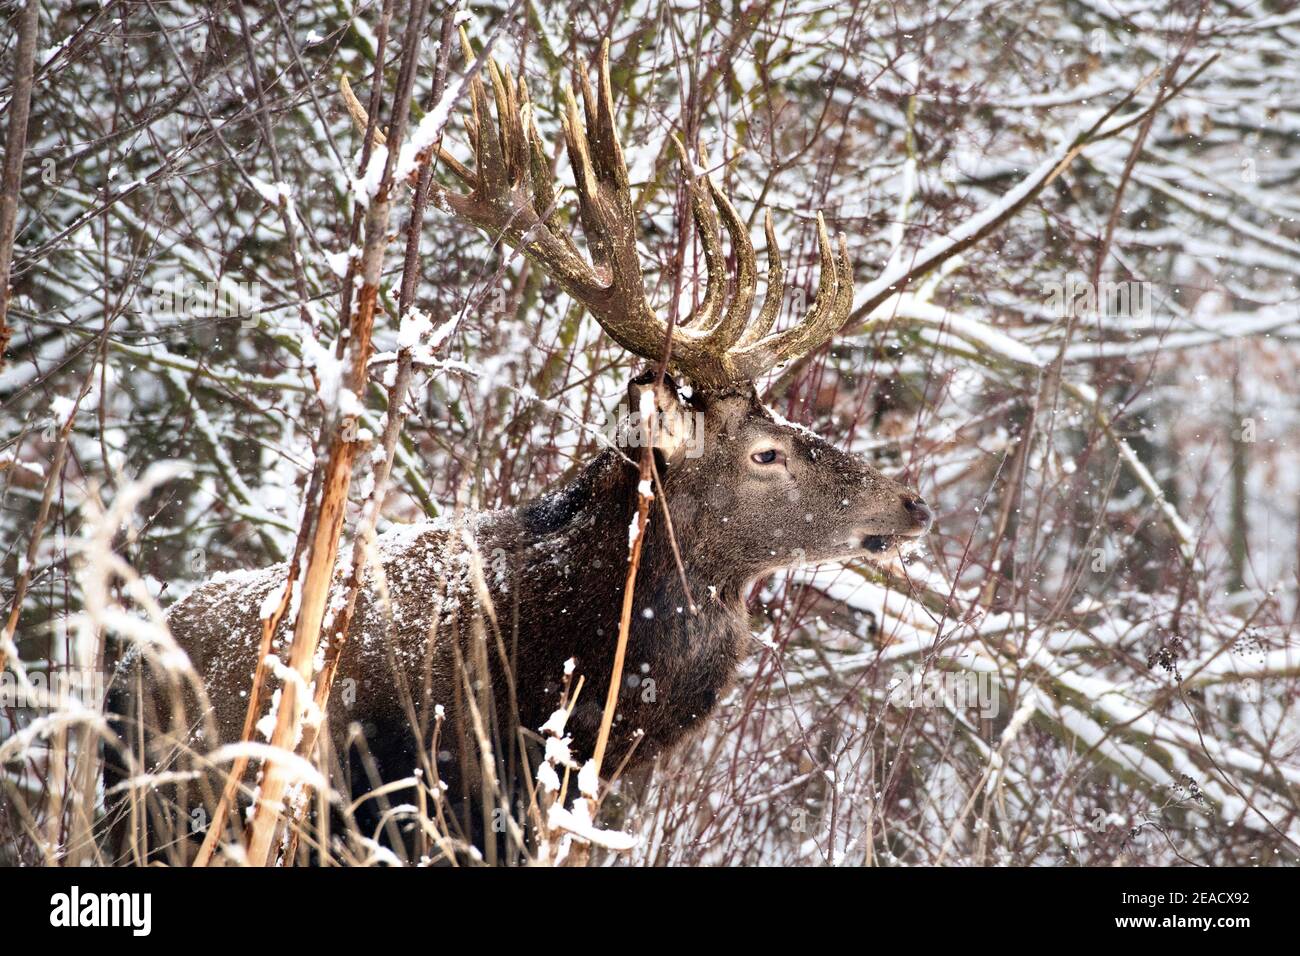 Red deer in winter Stock Photo